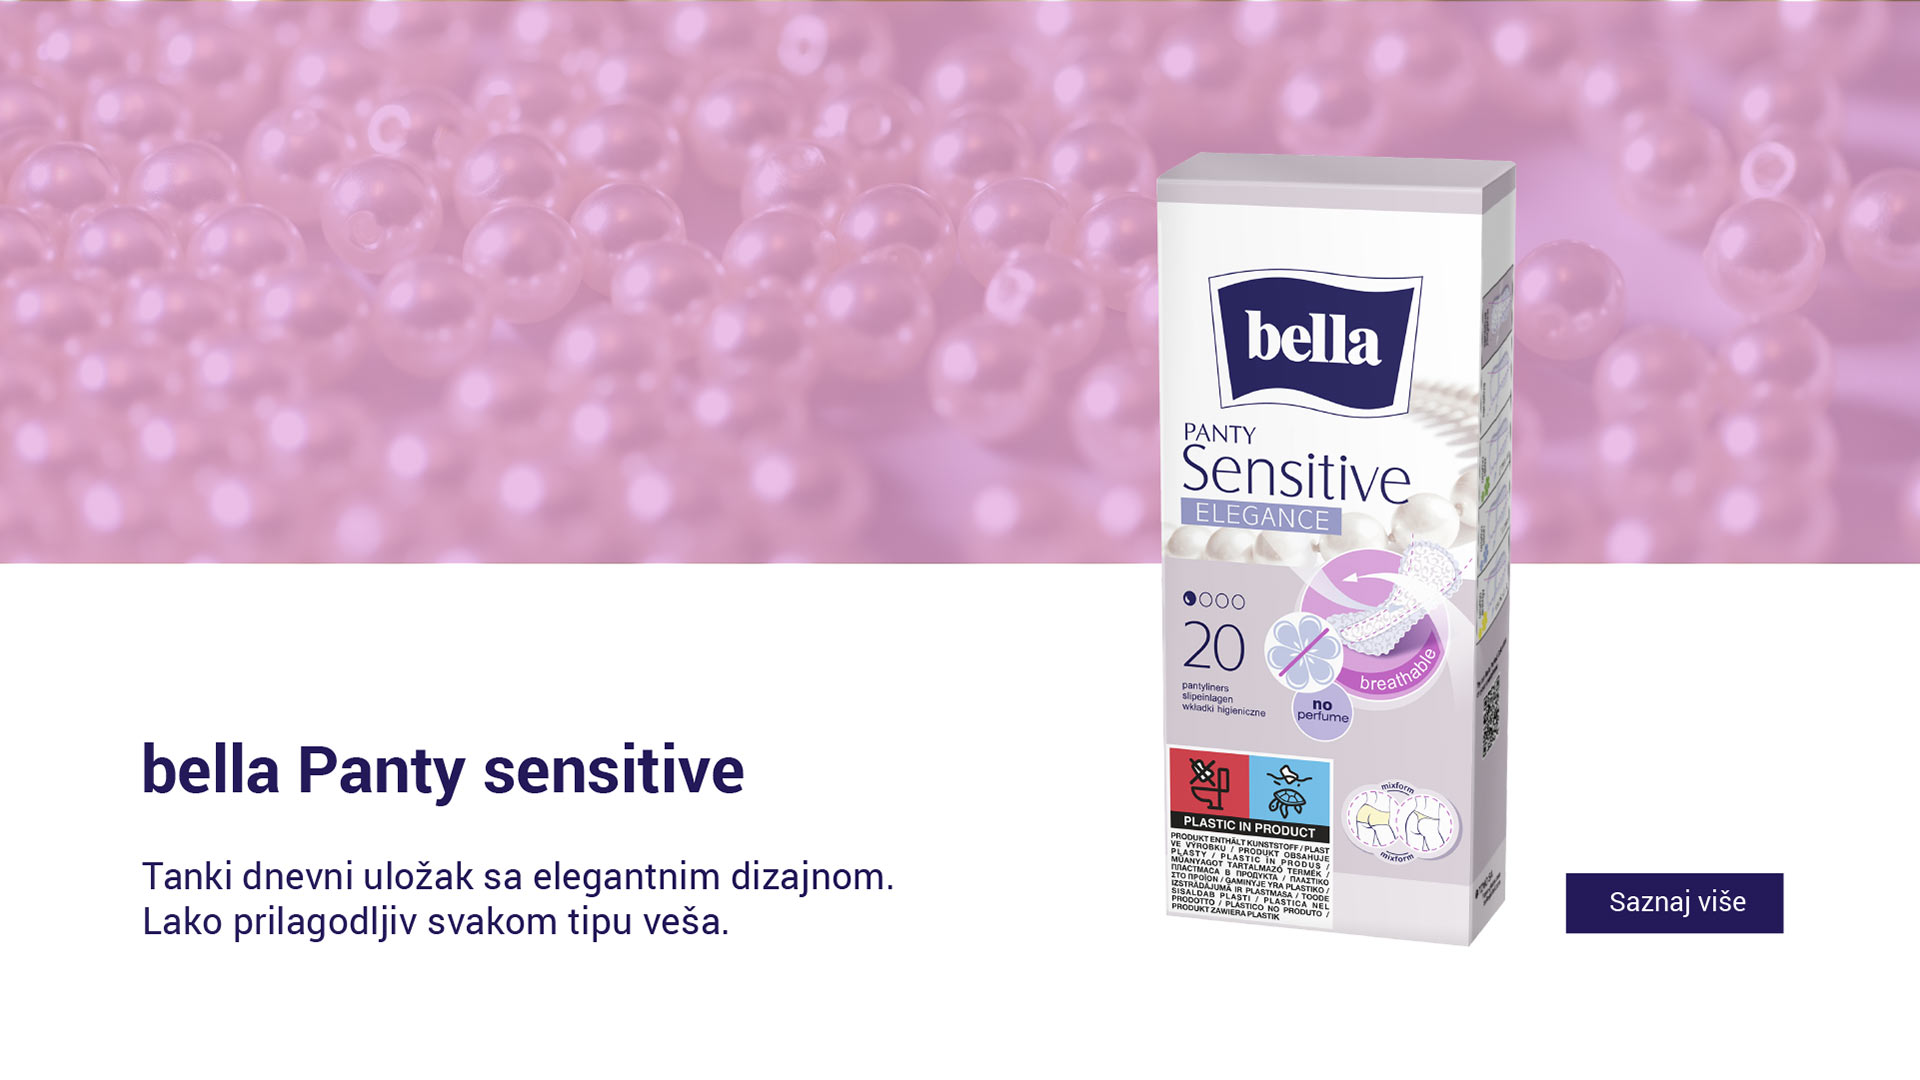 bella - Panty Sensitive - slider SR